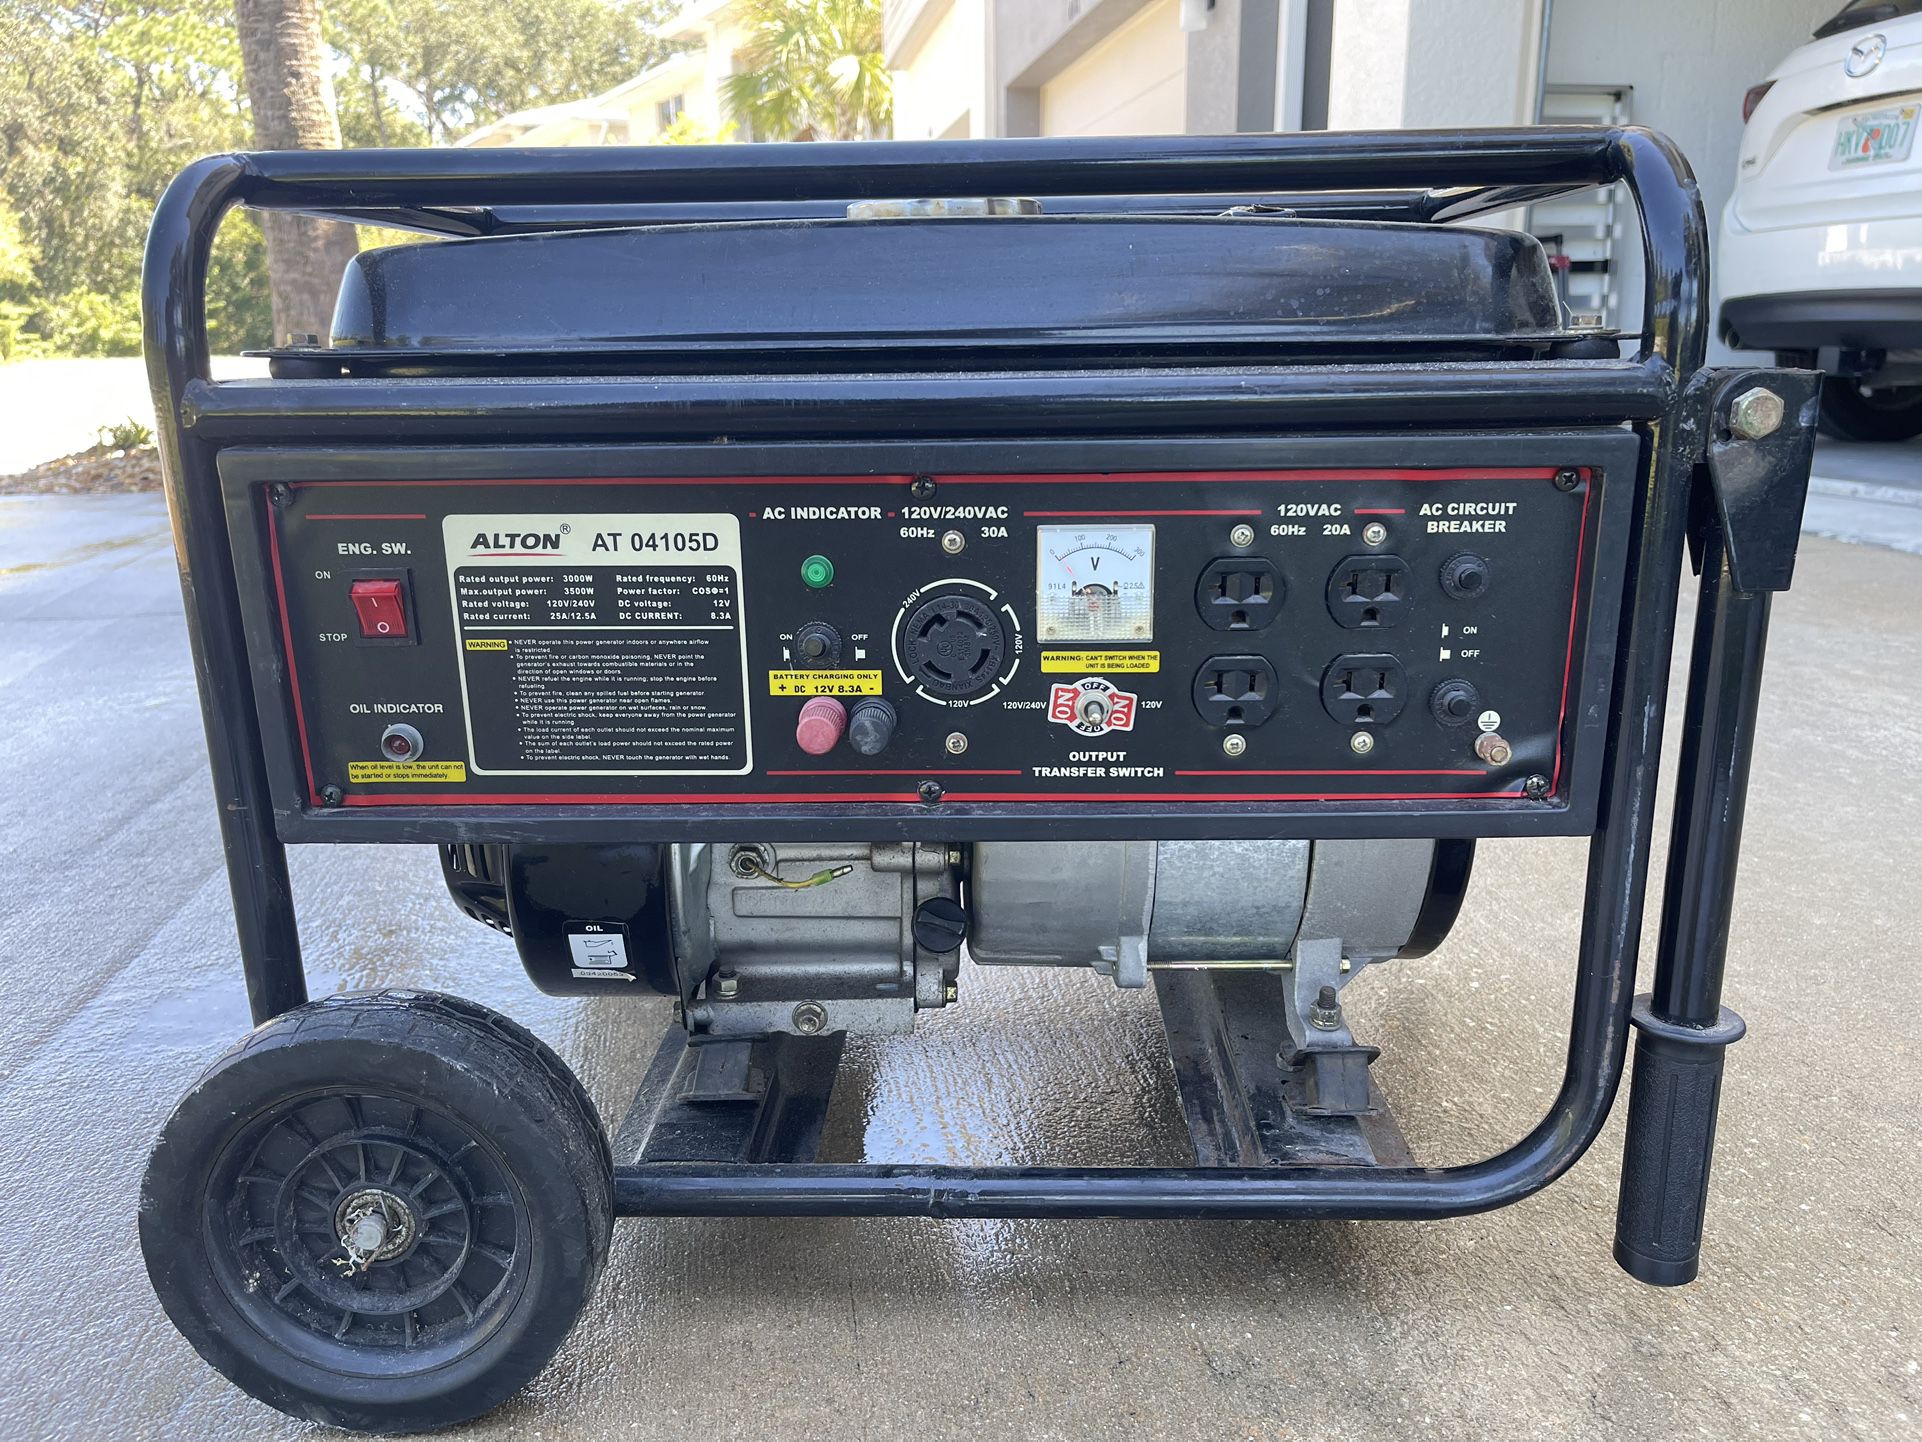 Generator Alton At 04105D